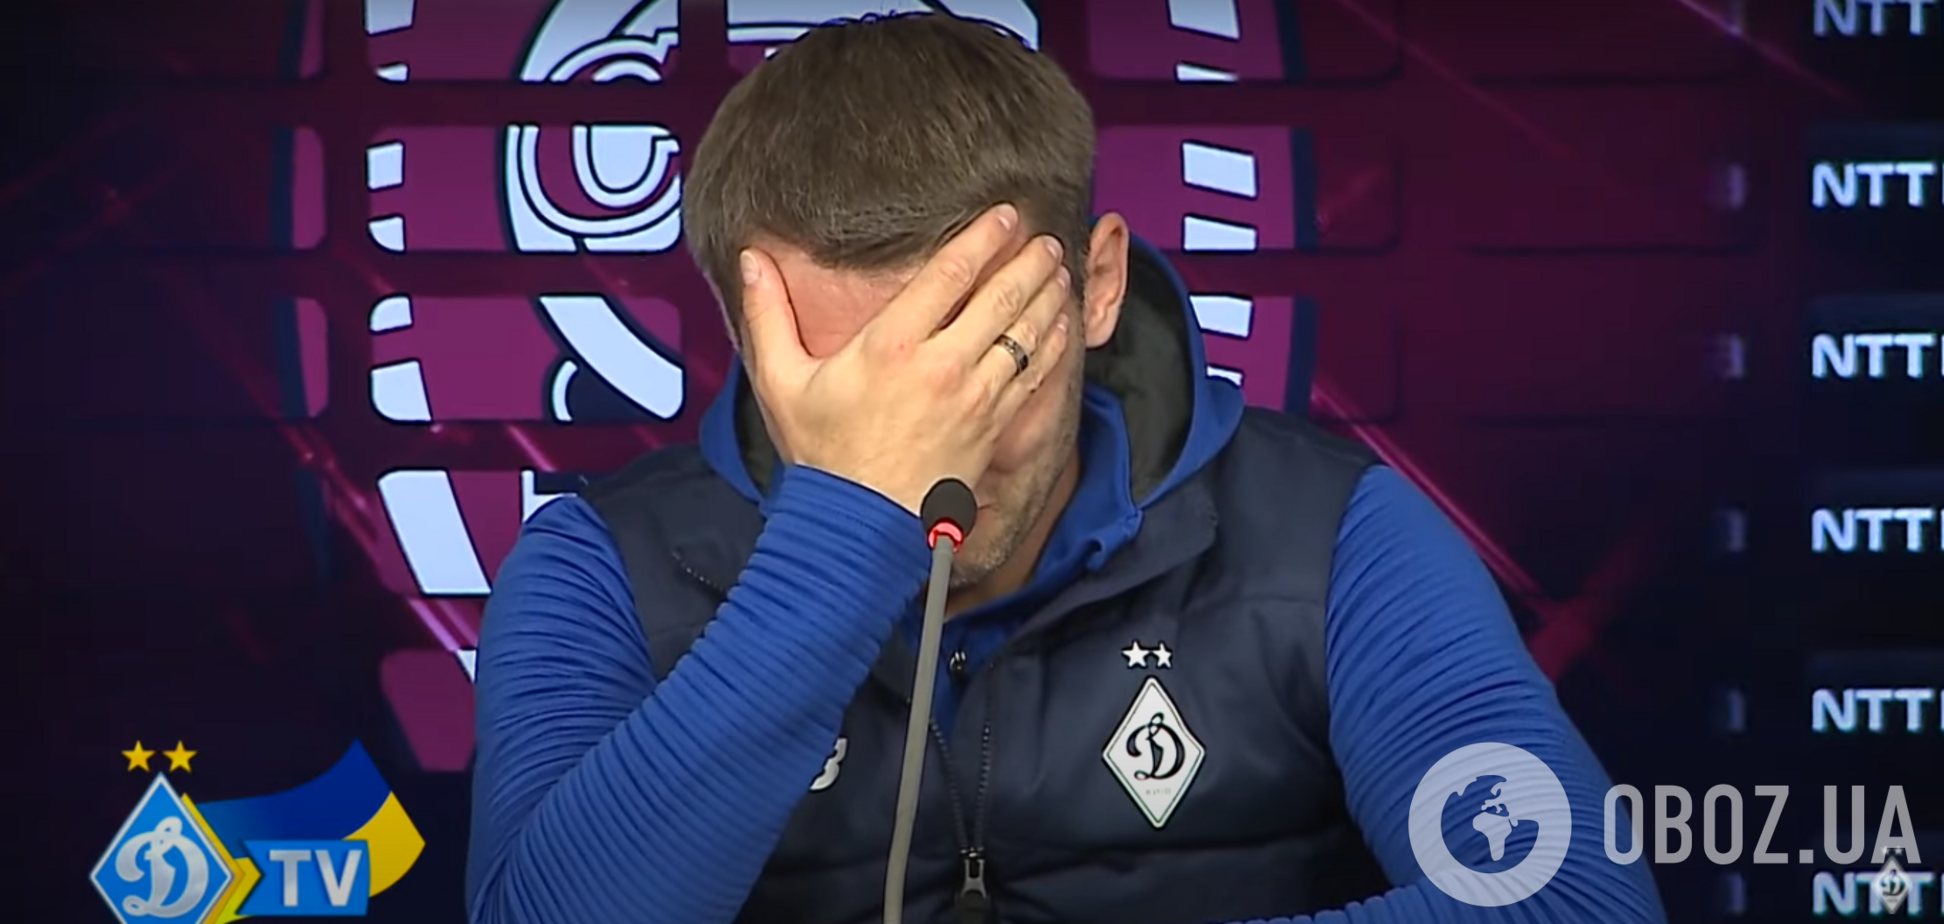 Футболист сборной Украины расплакался в эфире после слов про войну и не смог продолжить пресс-конференцию. Видео